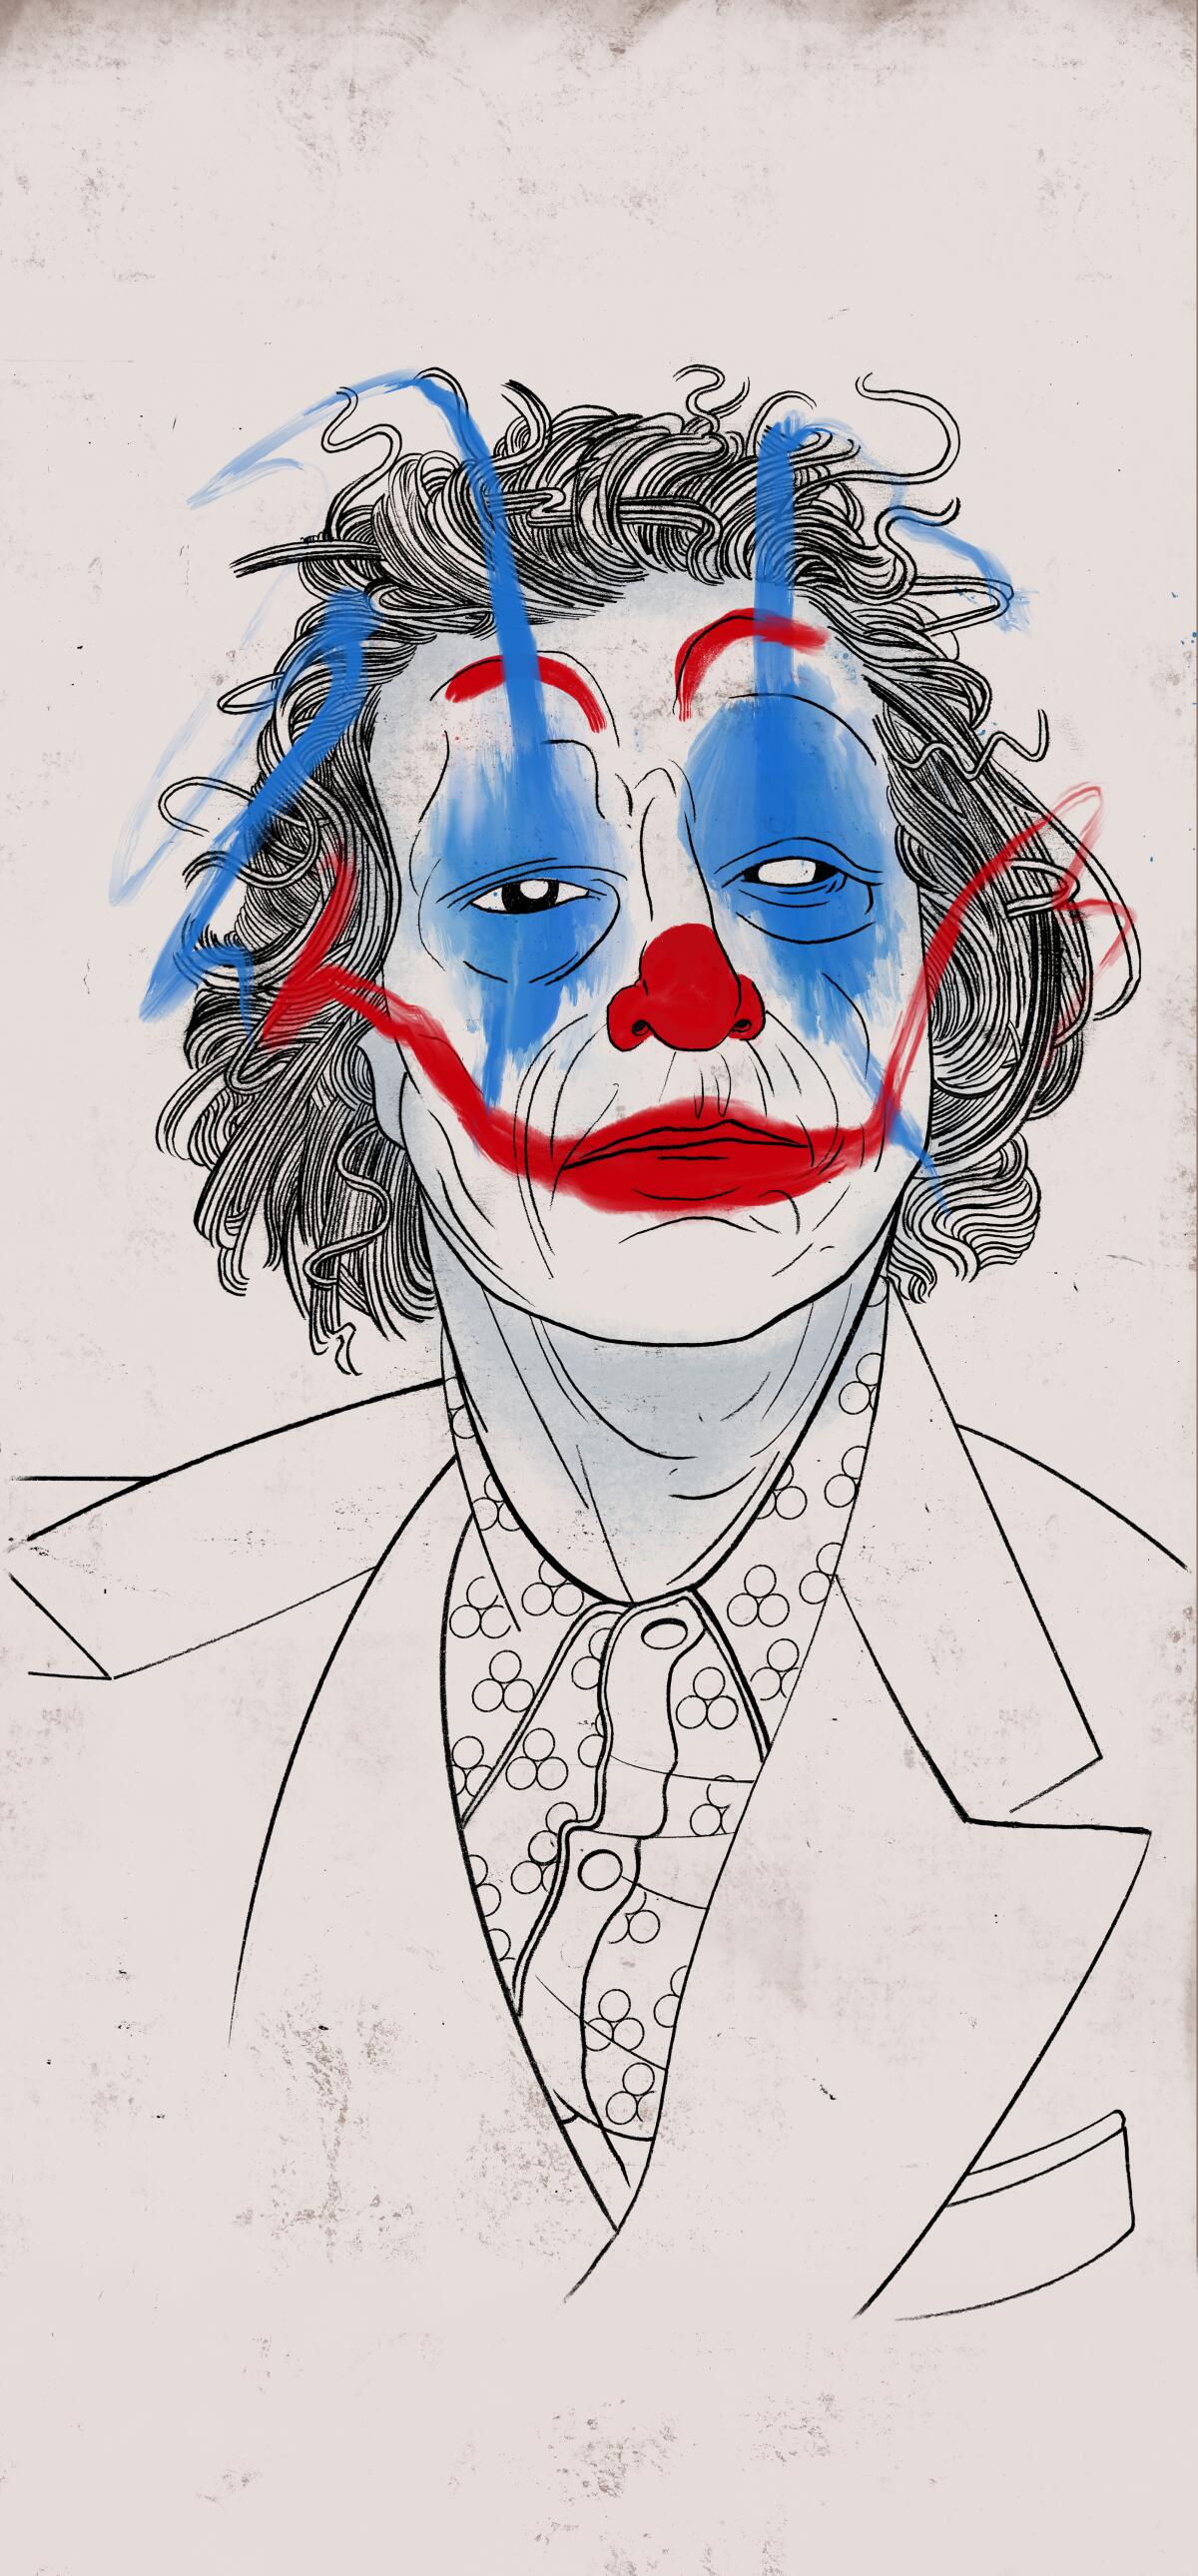 GSC - Hahahahahahahahahahahahaha! Joaquin Phoenix is the Best Actor!  #JokerMovie #Oscars